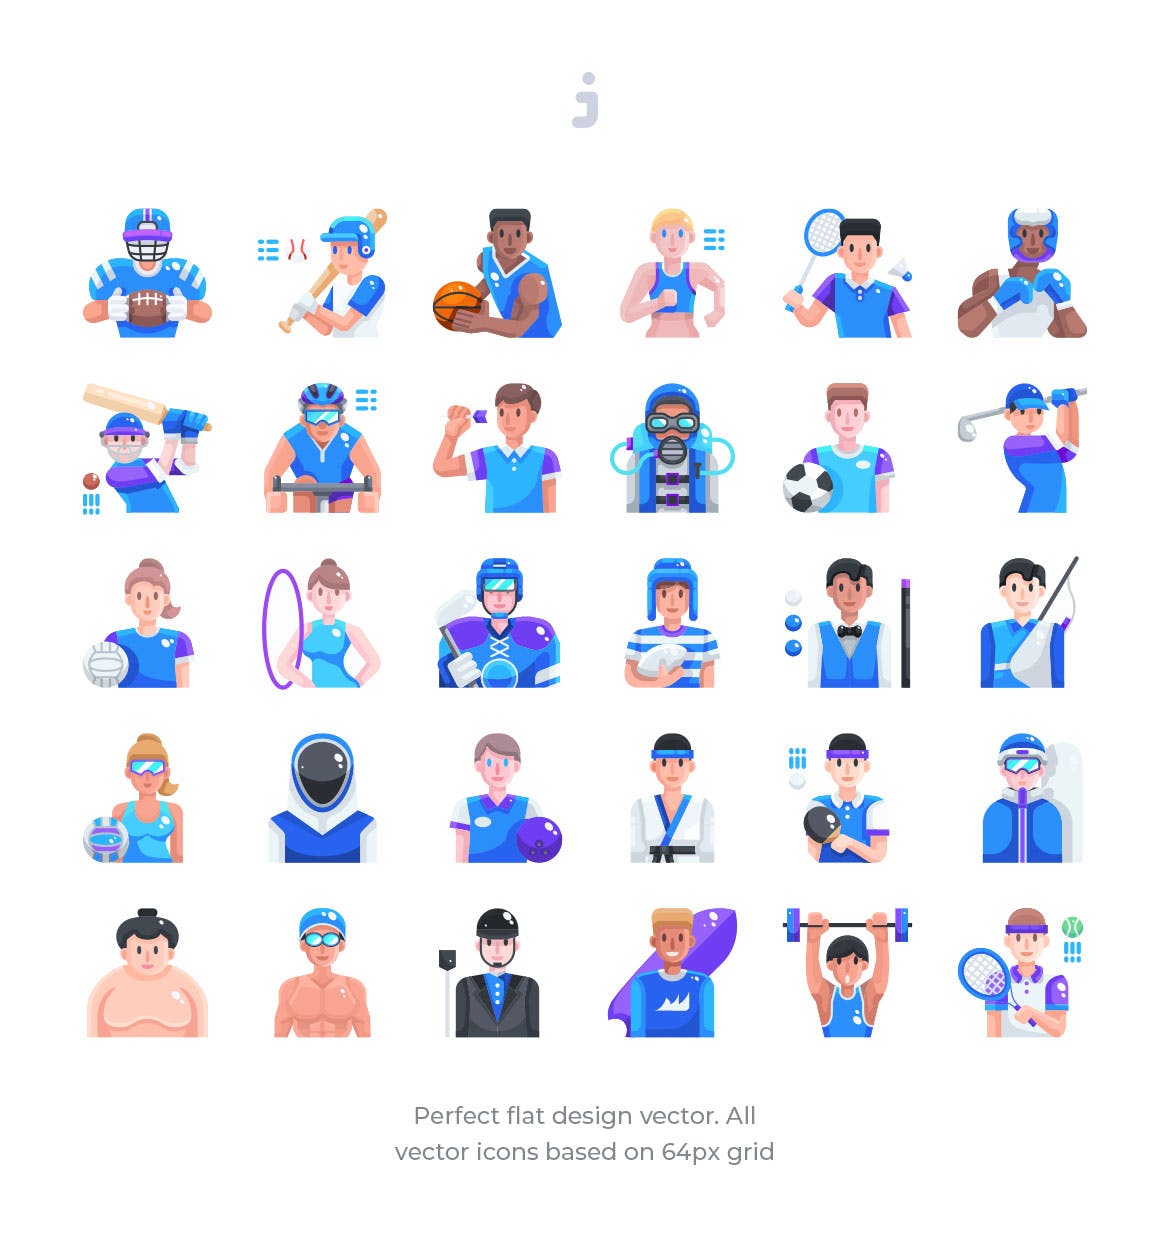 30枚运动员人物扁平化设计矢量图标 30 Sport Avatar Icons – Flat插图(1)